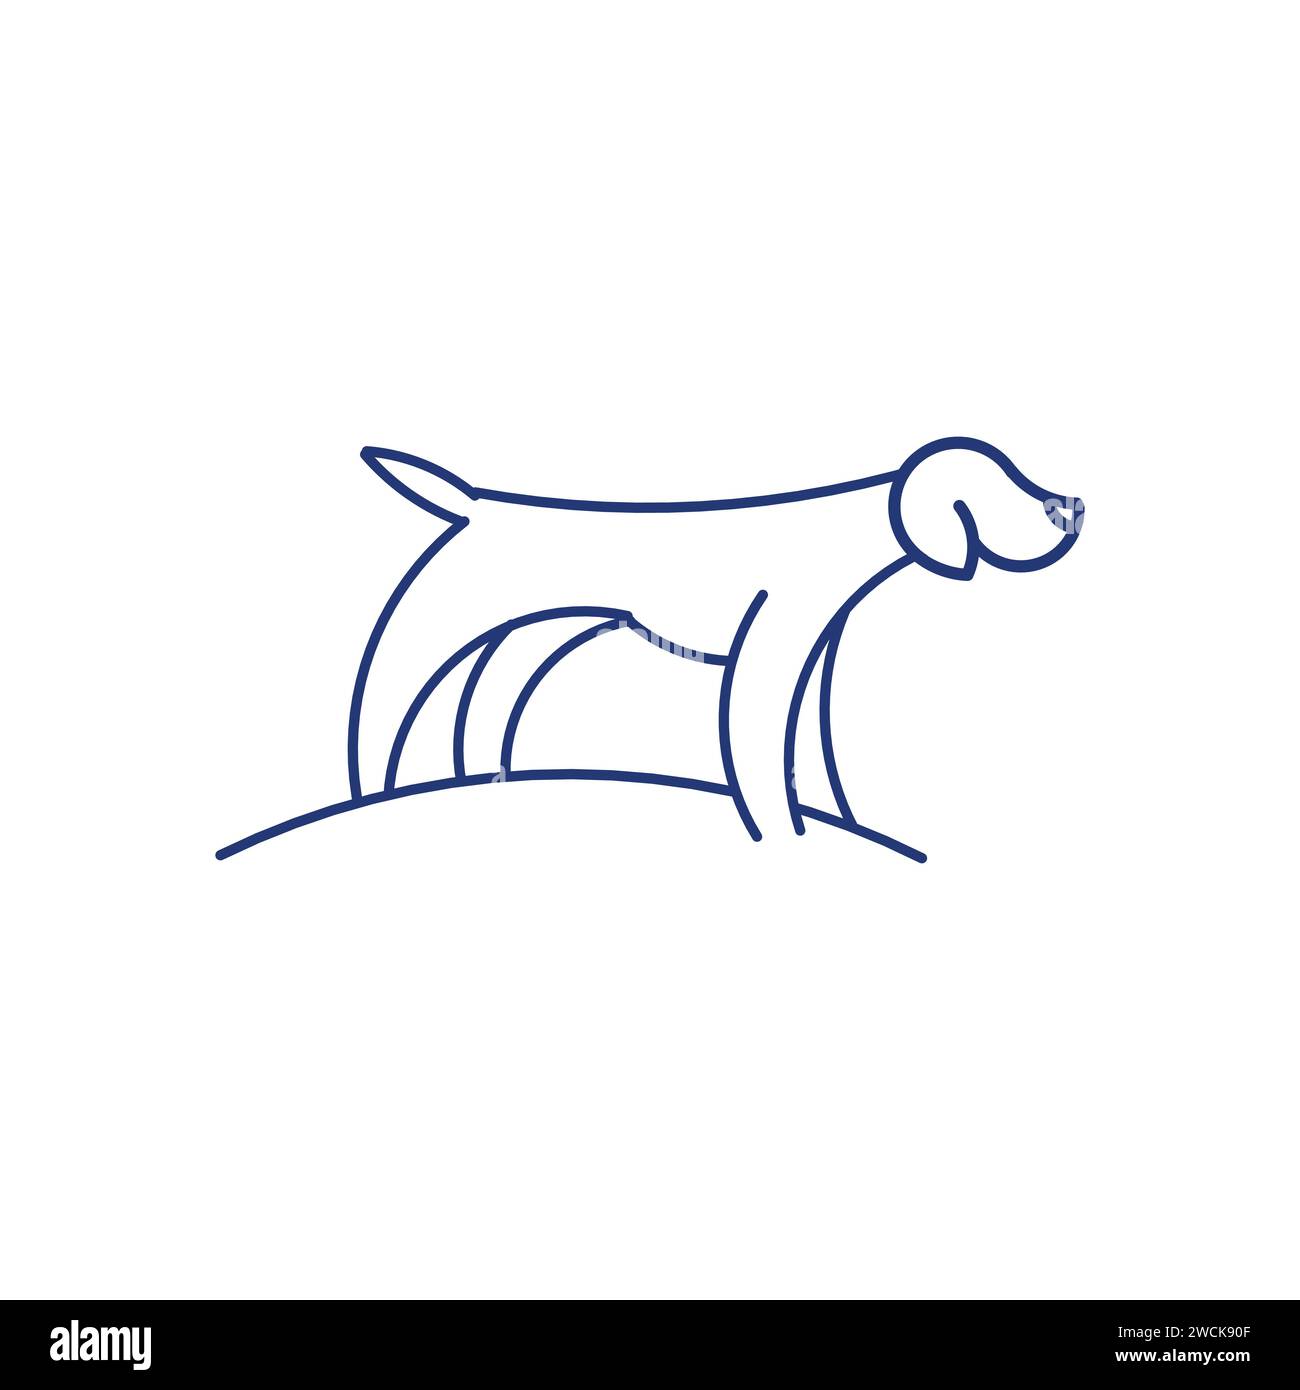 Disegno del logo Dog line art semplice e minimale con illustrazione del logo di un animale vettore. Disegno del logo Dog line art semplice e minimale con illustrazione del logo di un animale vettore Illustrazione Vettoriale